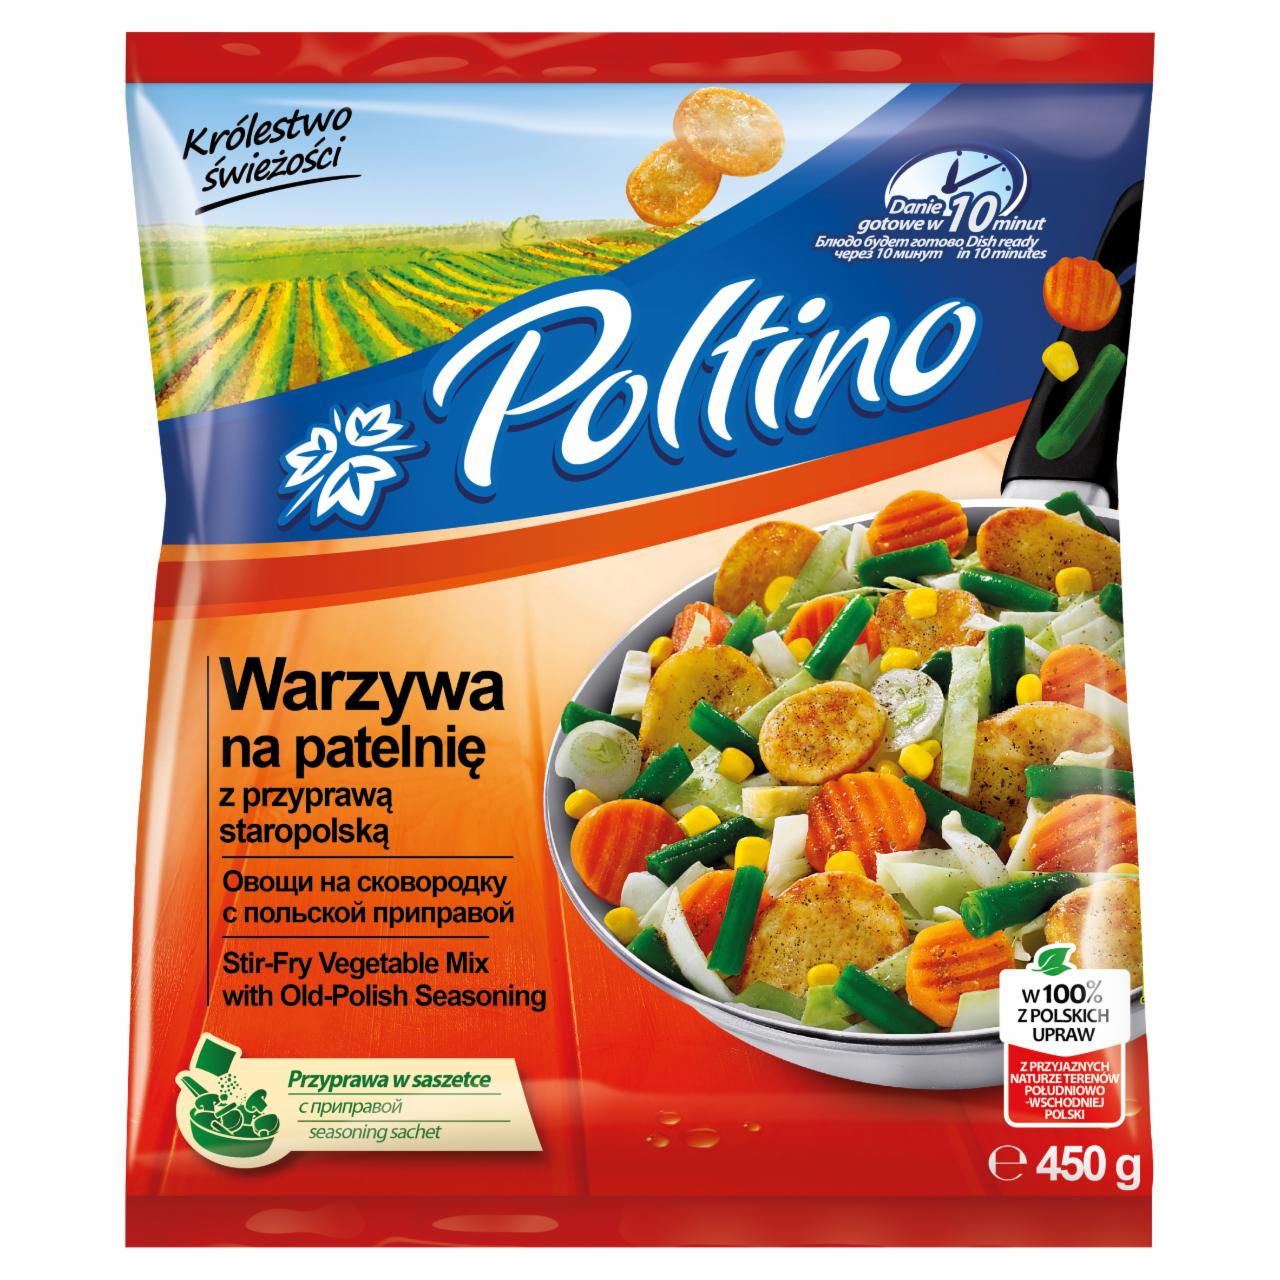 Zdjęcia - Poltino Warzywa na patelnię z przyprawą staropolską 450 g